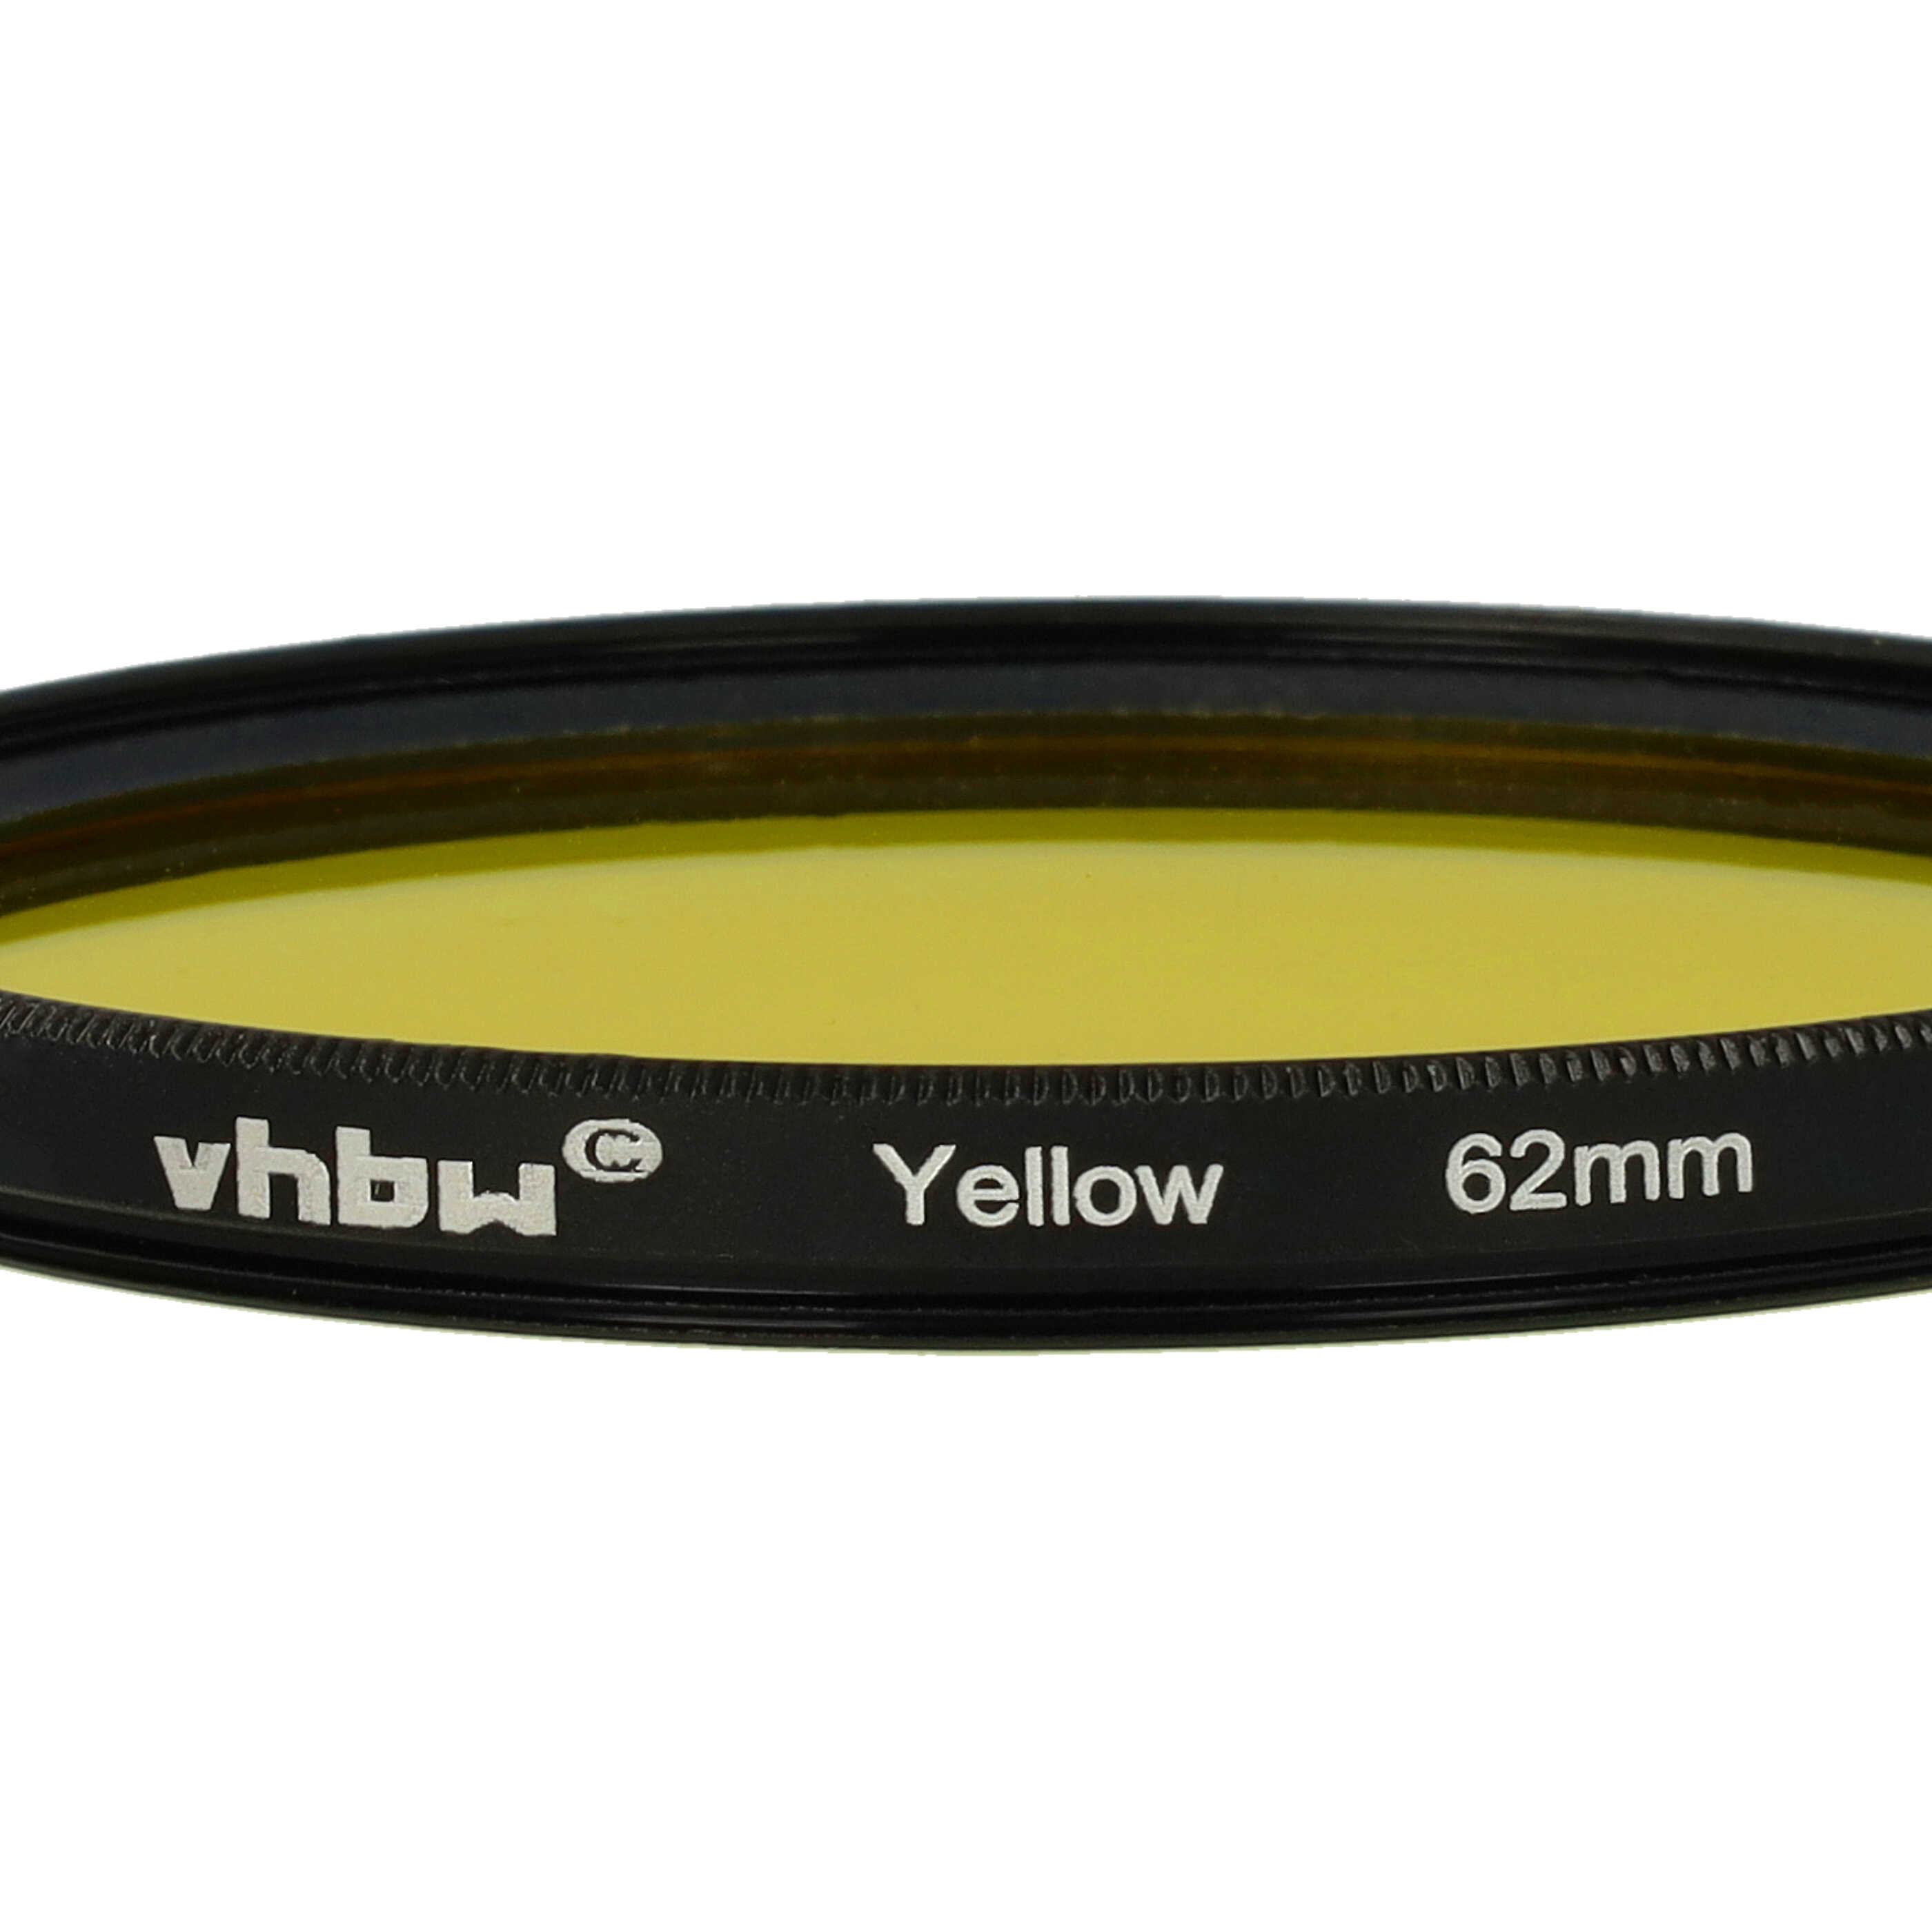 Farbfilter gelb passend für Kamera Objektive mit 62 mm Filtergewinde - Gelbfilter